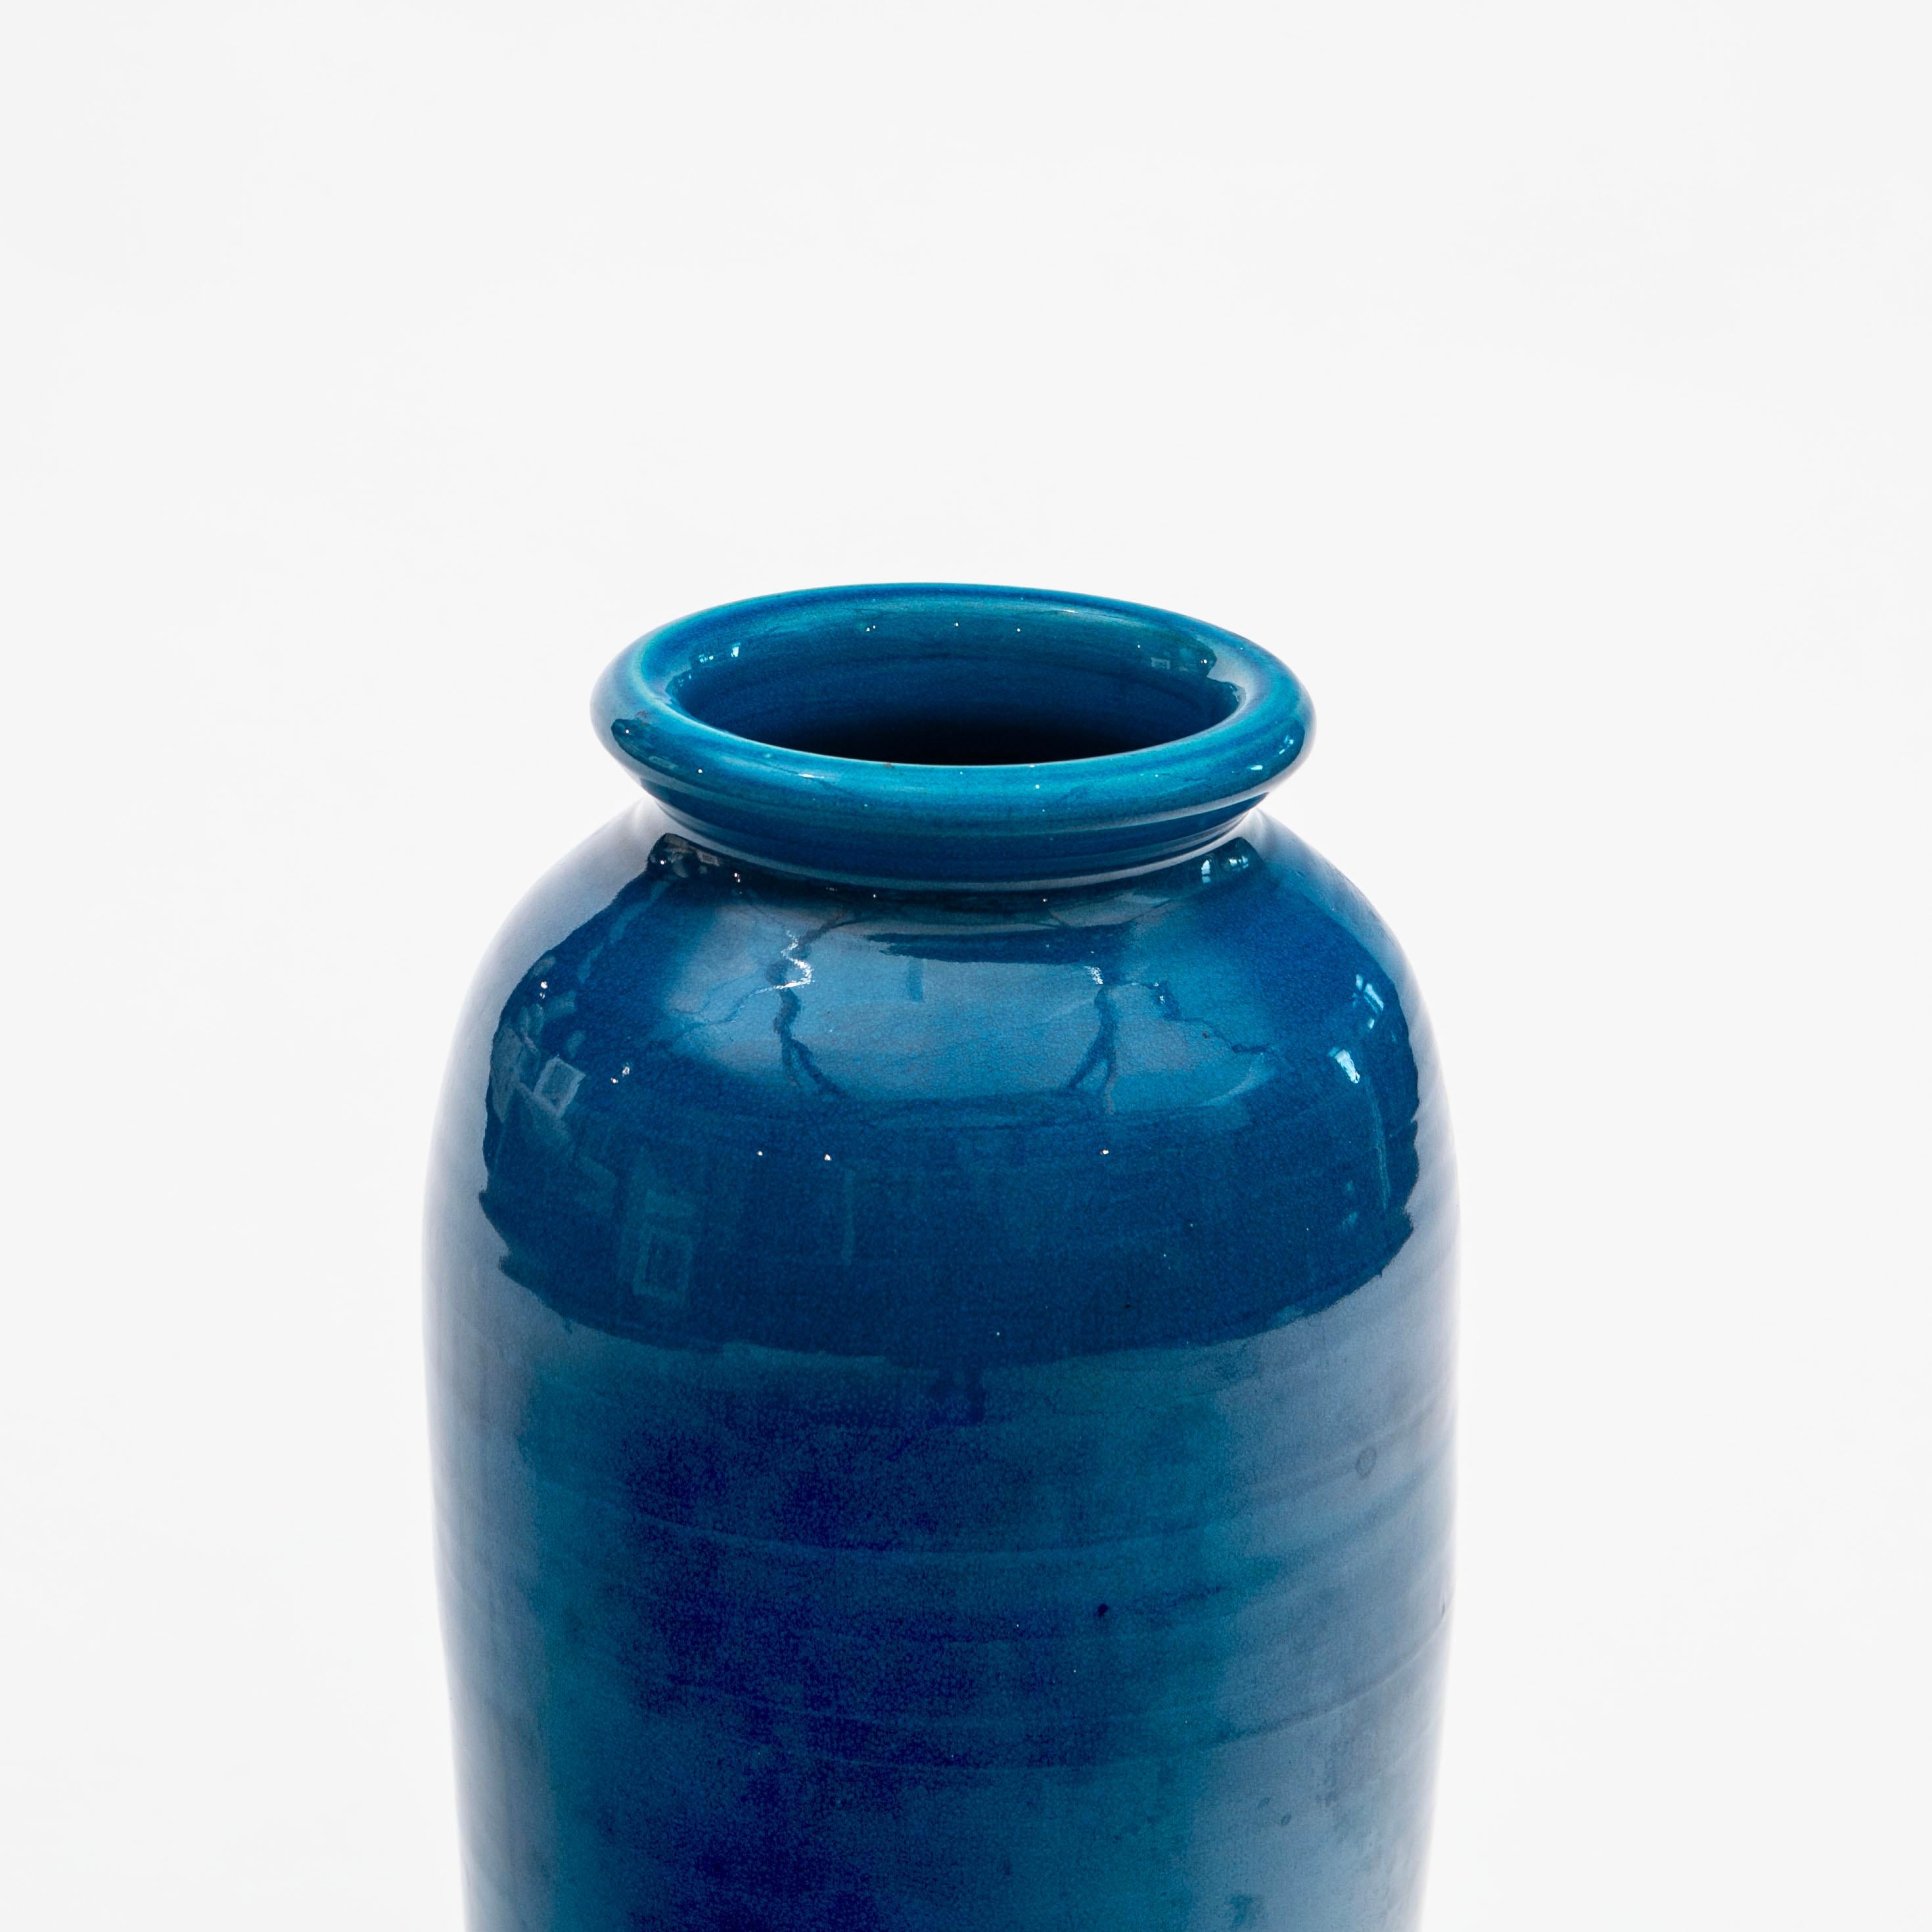 Grand vase de sol en grès à glaçure bleu turquoise fabriqué par Kähler. H. 56 cm. Ouverture de la bouche 13 cm
Signé avec la marque du fabricant HAK gravée sous la base (Hermann A. Kähler).

En excellent état vintage.
Danemark 1920-1930